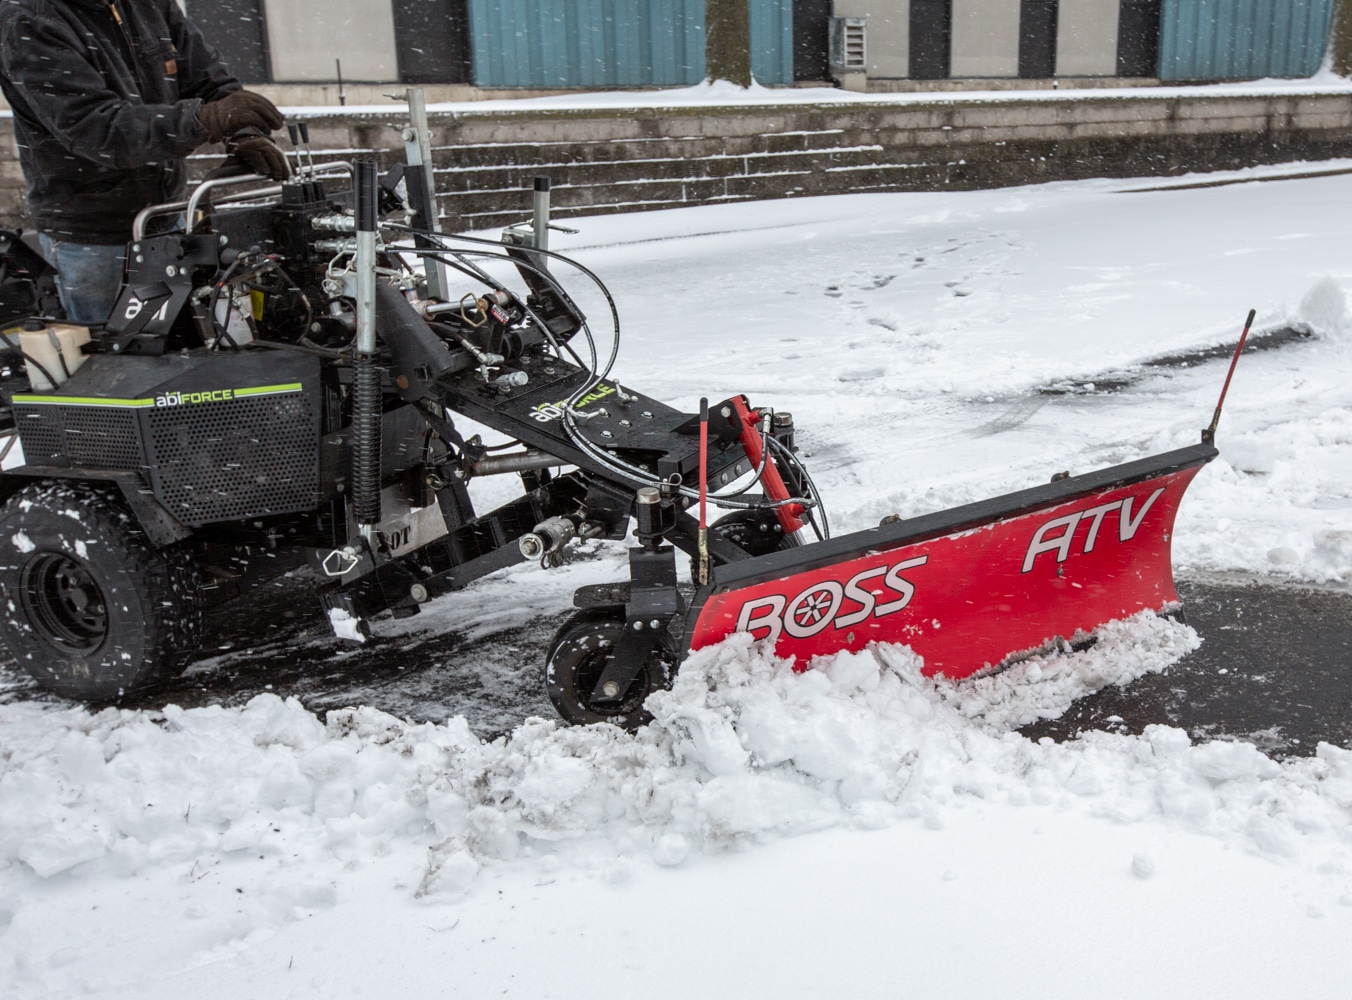 ATV Snow Removal Attachment